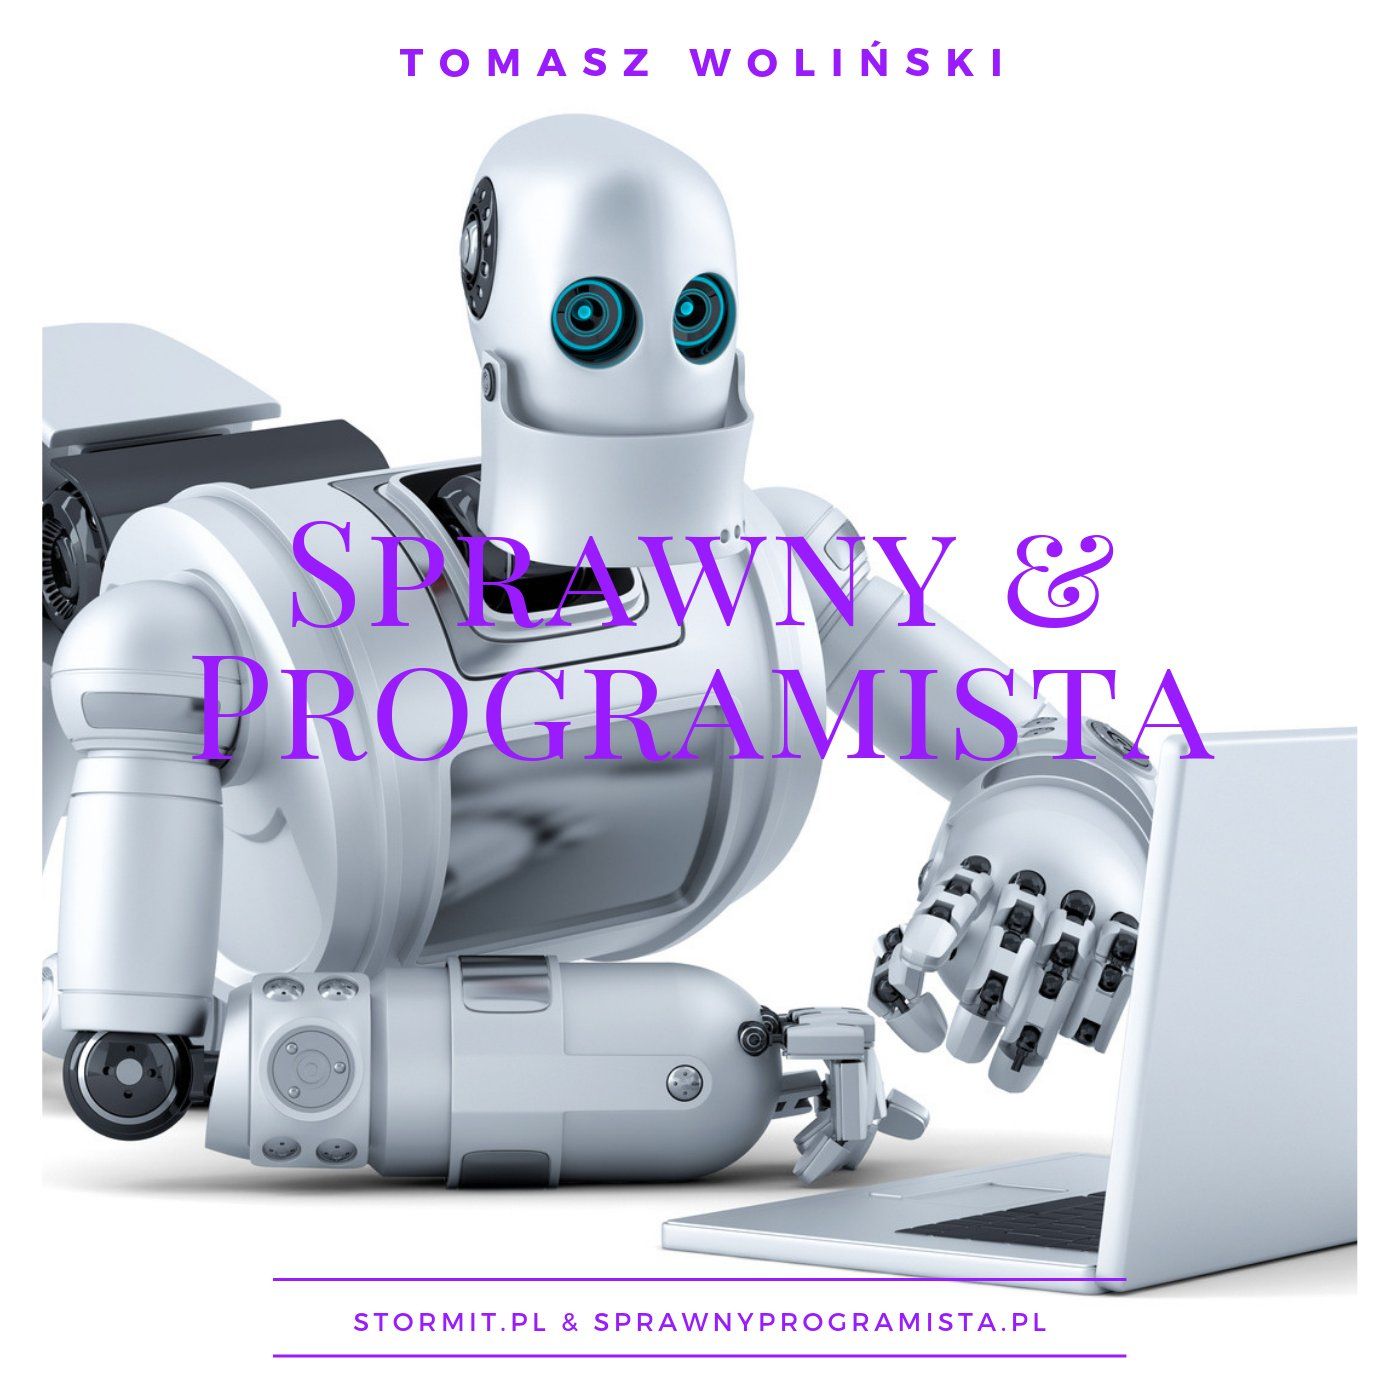 Sprawny Programista » Podcast o programowaniu po polsku » Intro